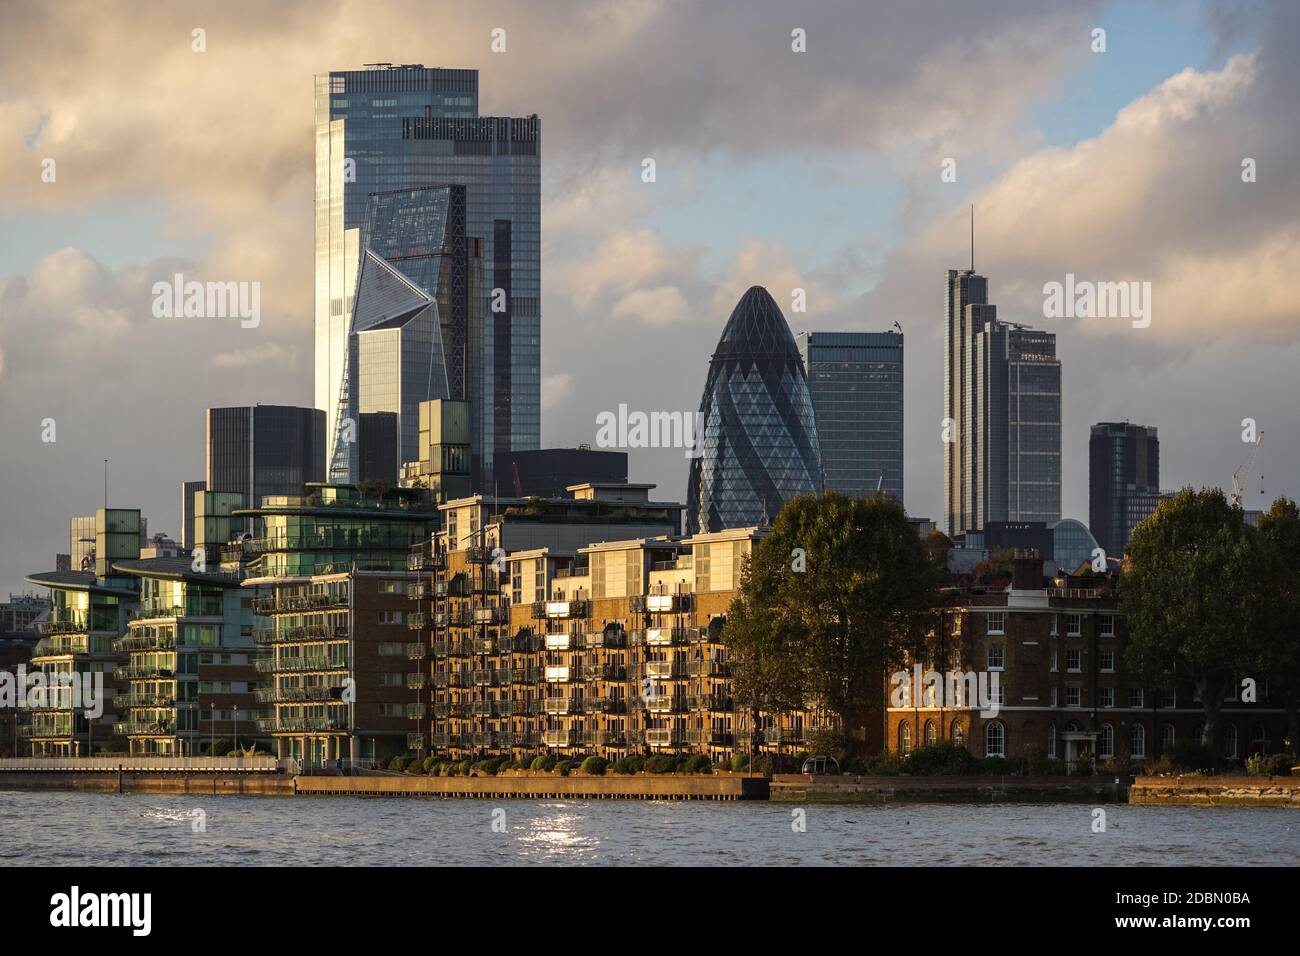 Londres City gratte-ciel au coucher du soleil, Angleterre Royaume-Uni Banque D'Images